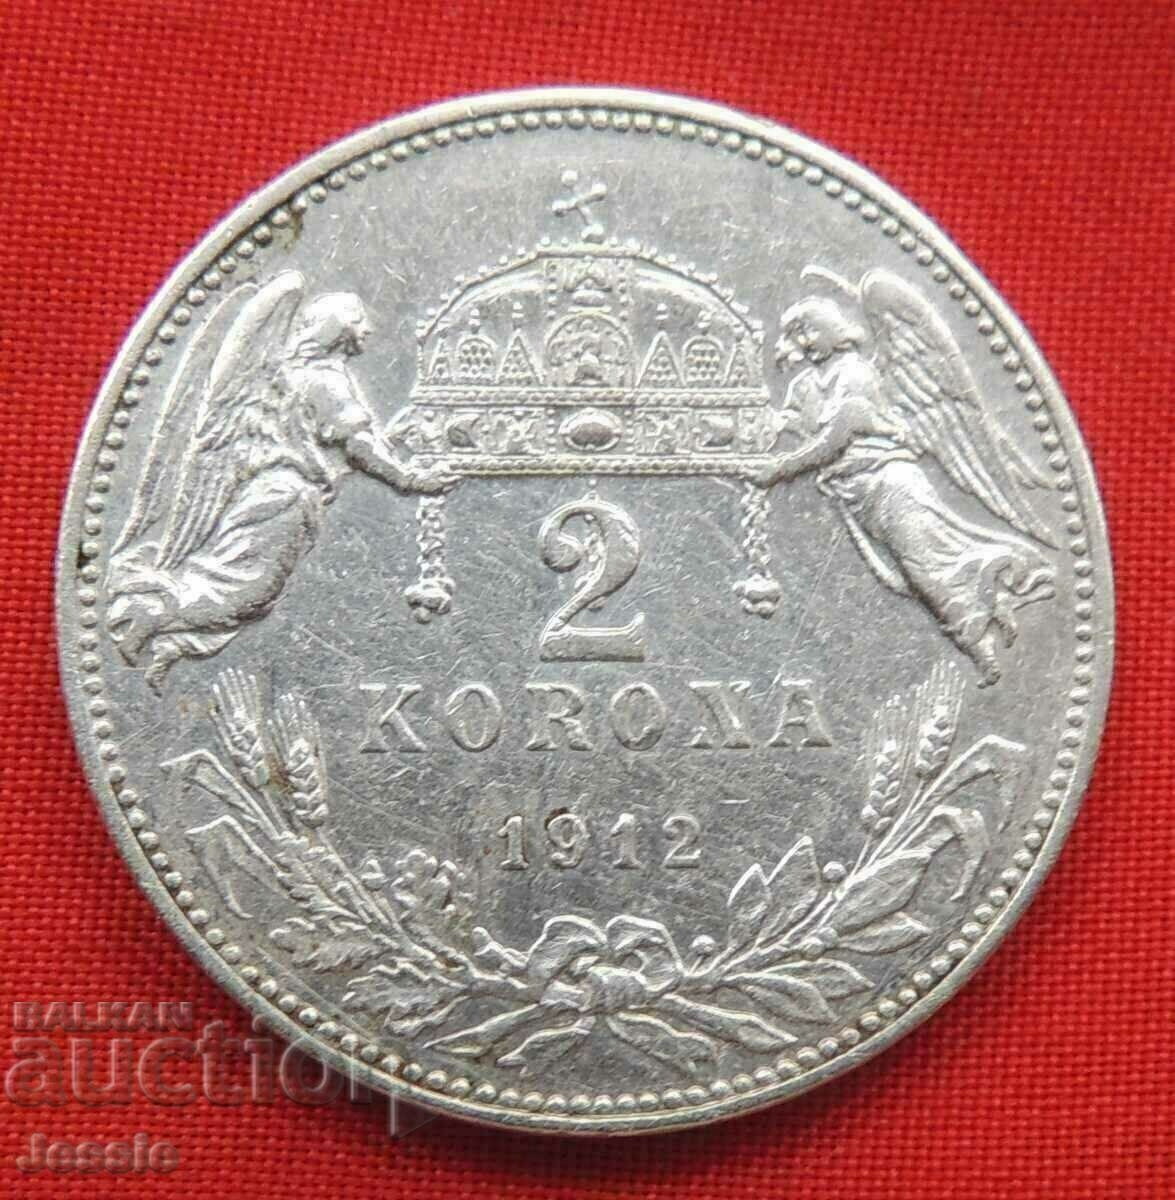 2 Korona 1912 KB Austohungary / για την Ουγγαρία / ασήμι ΠΟΙΟΤΗΤΑ